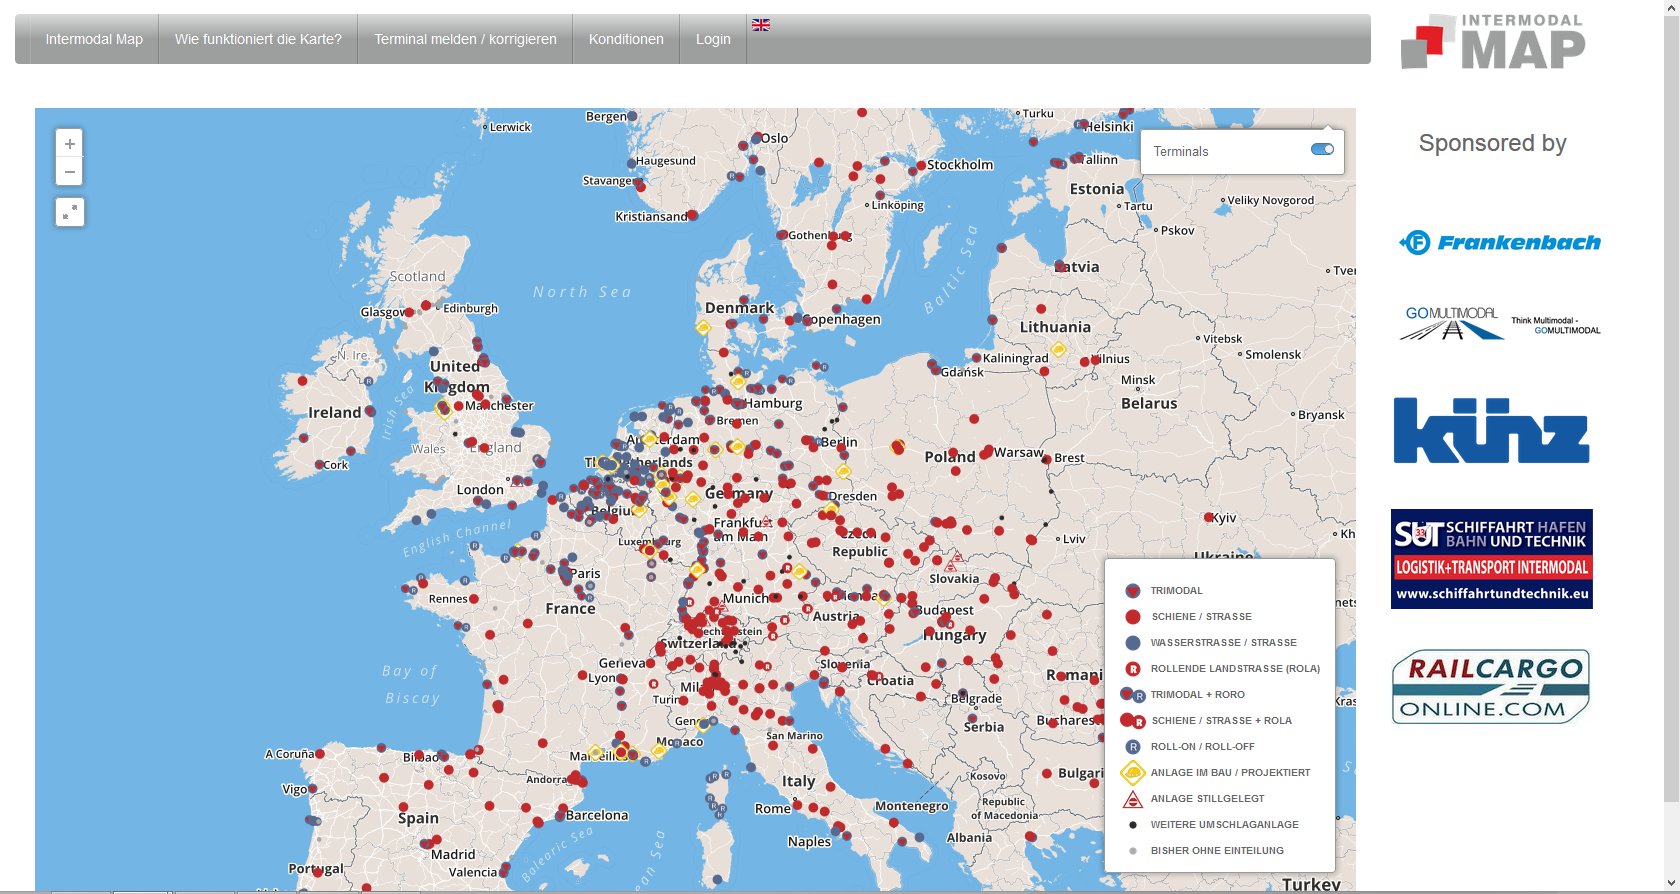 Intermodal Map Das umfassende Verzeichnis der Terminals des Kombinierten Verkehrs in Europa. Mit zusätzlichen, detaillierten Informationen für Mitglieder der SGKV.